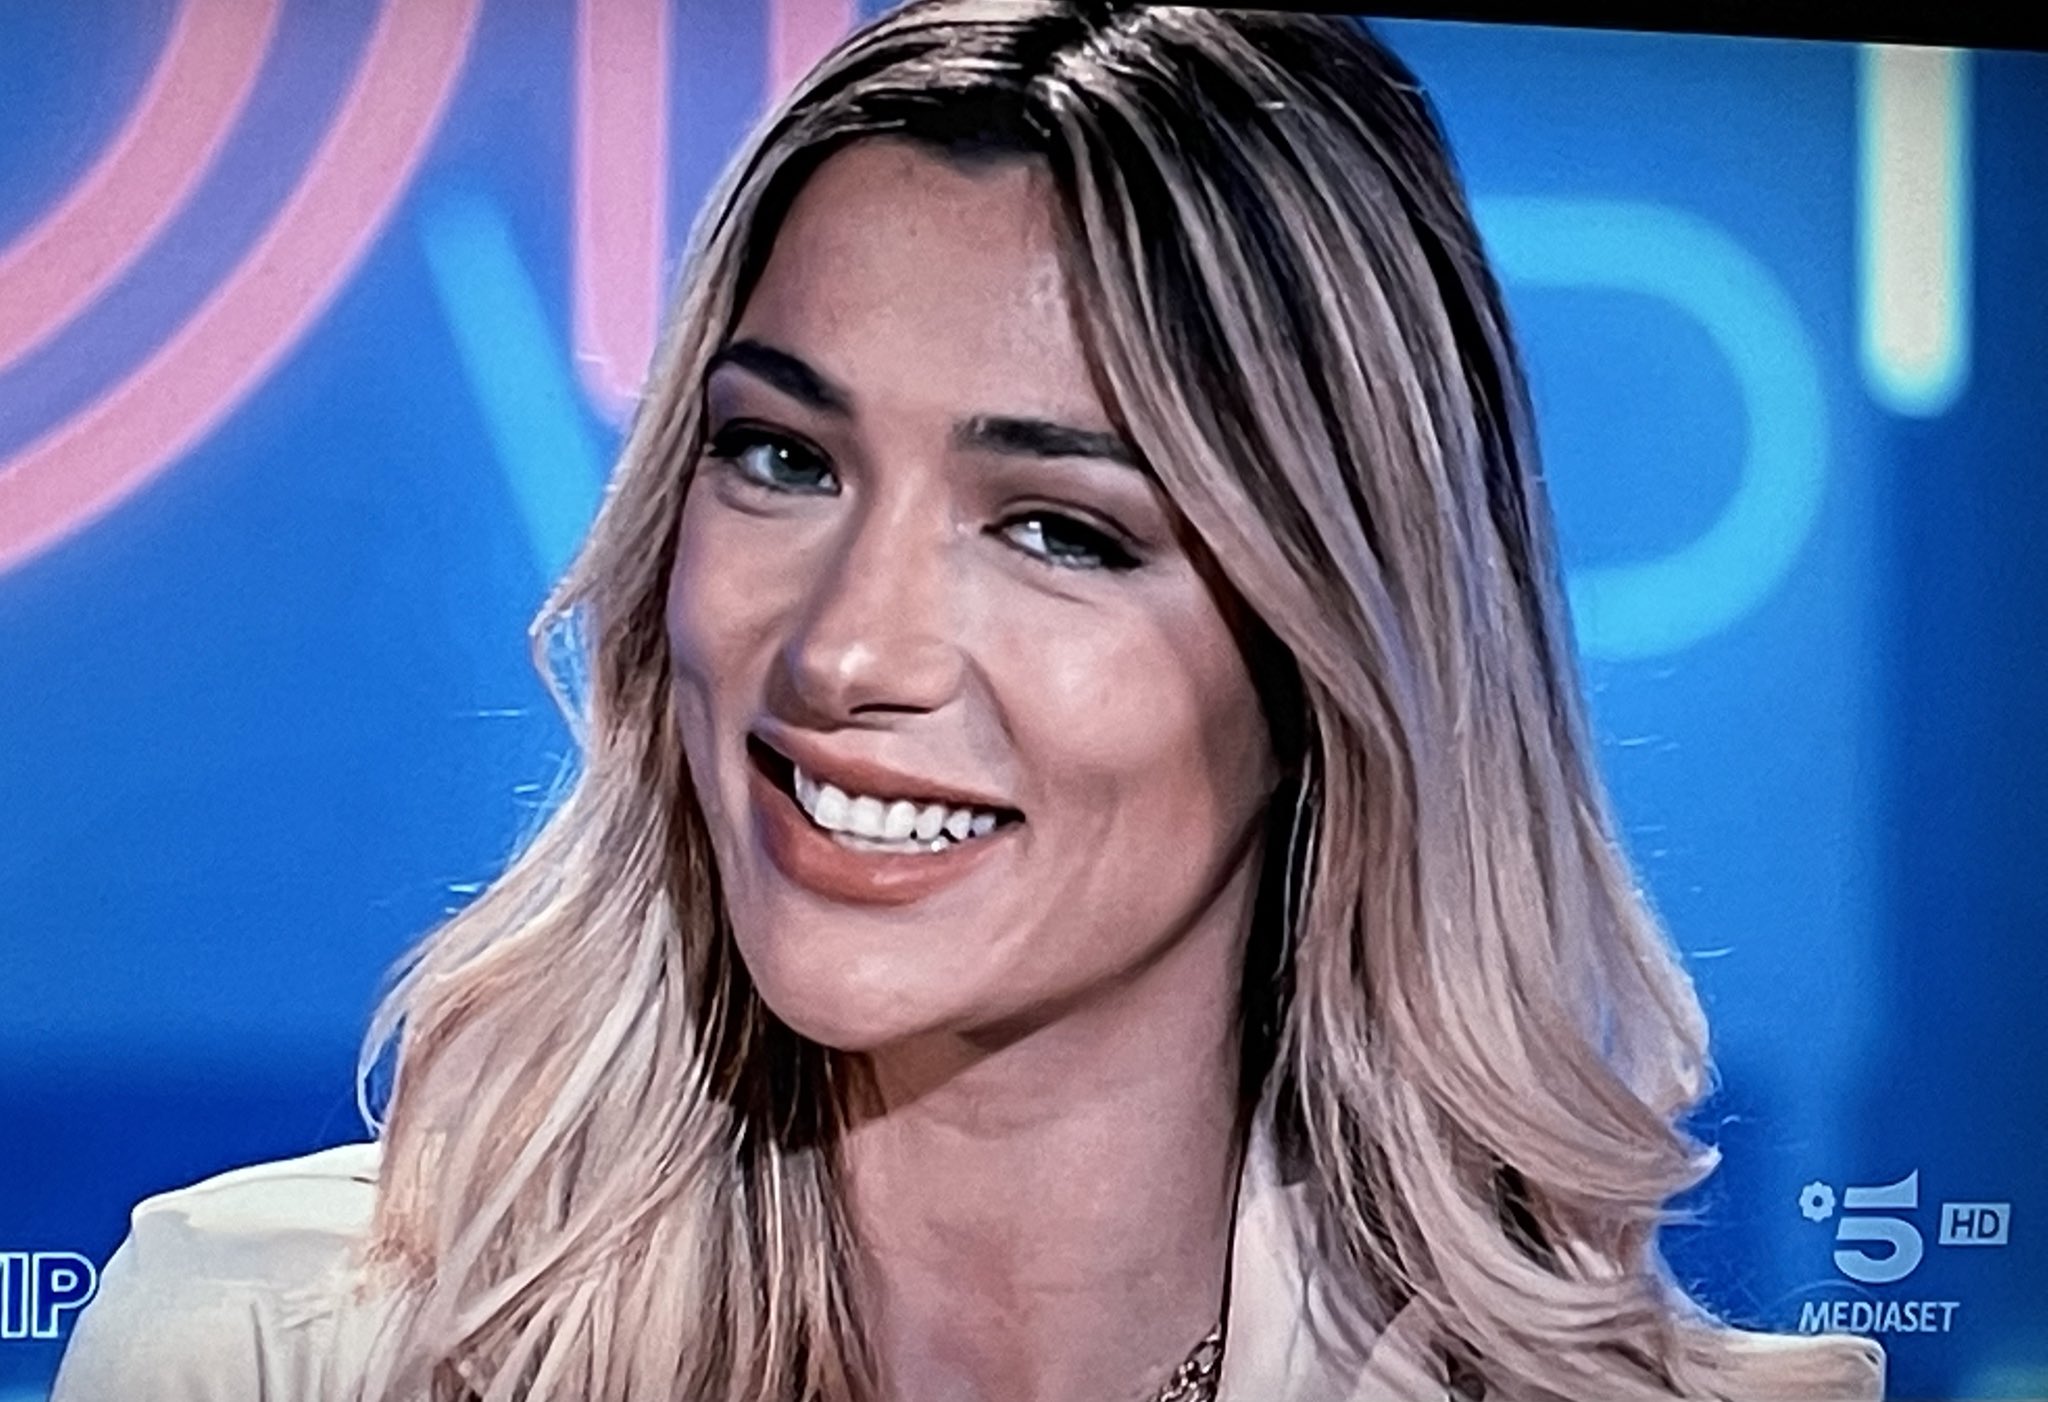 Eleonora D'Amore on Twitter ""Sono una modella, un'influencer, un'attrice, UNA GIORNALISTA